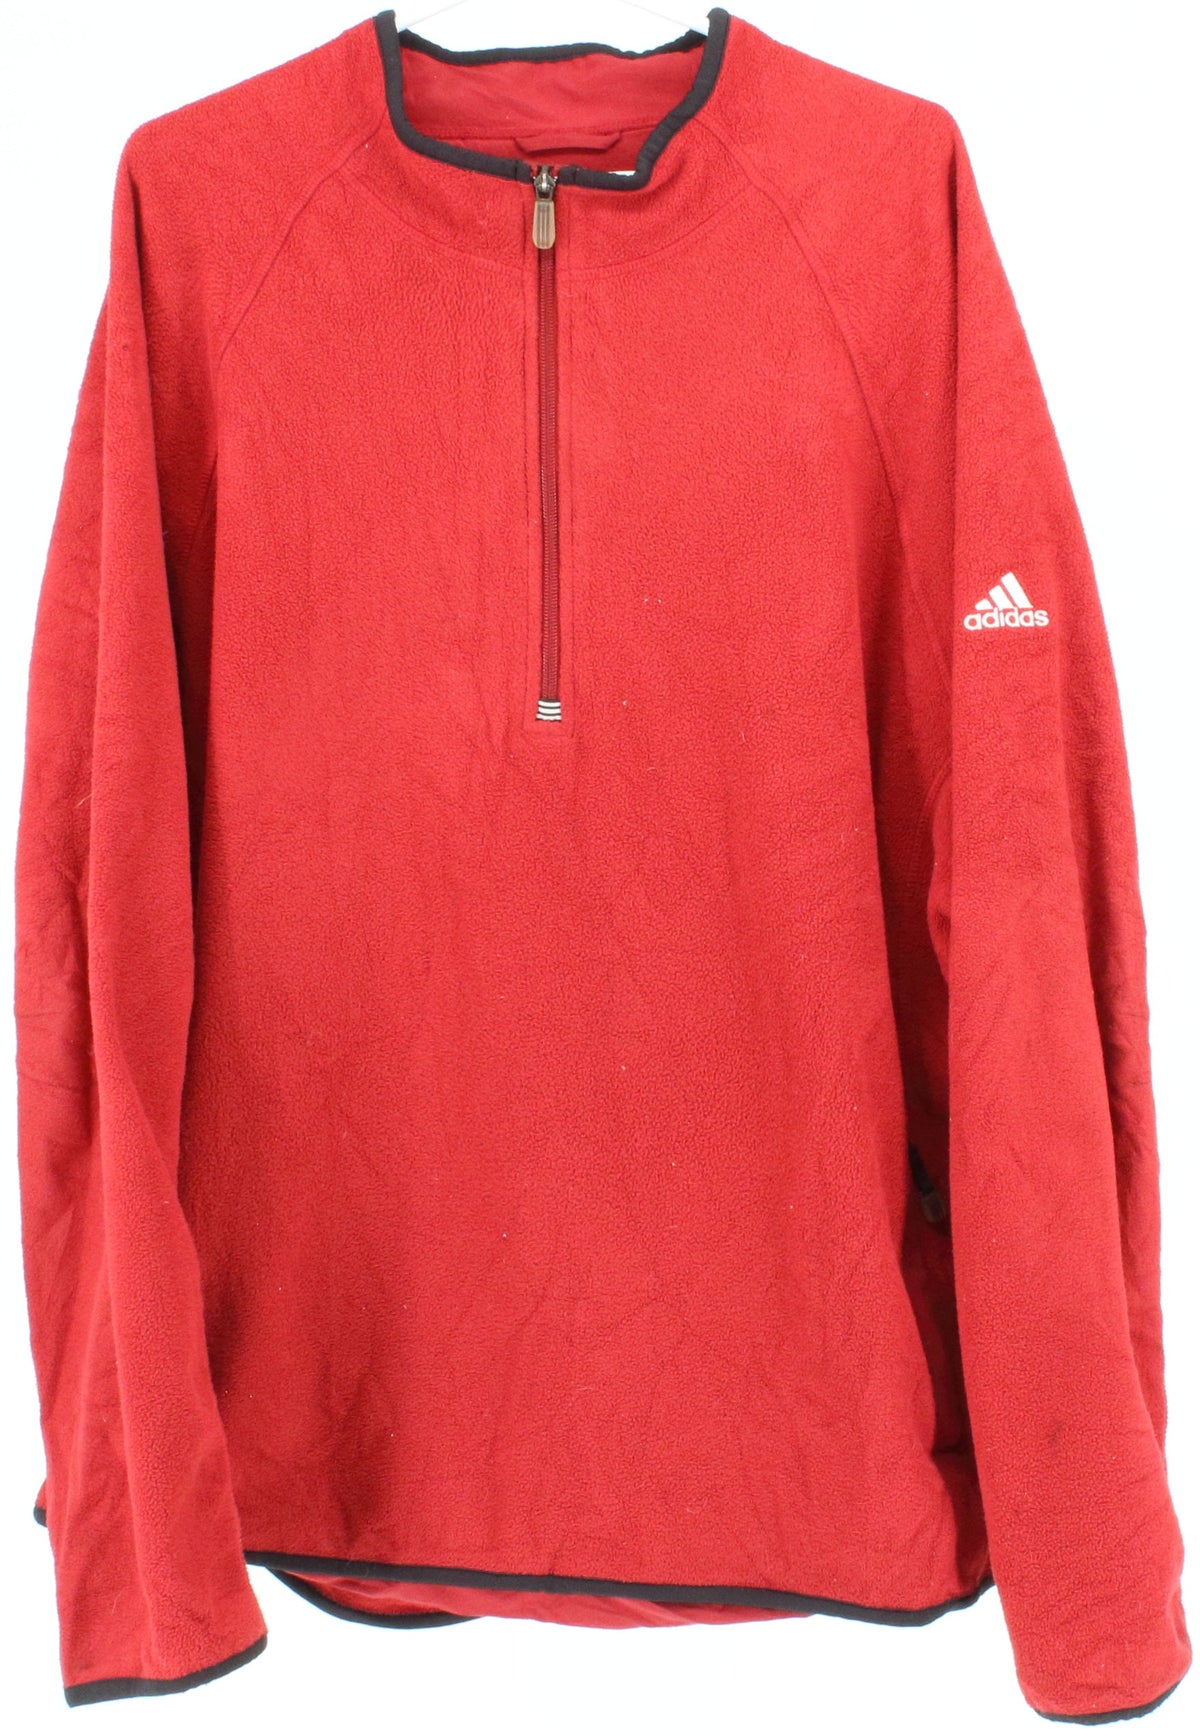 Adidas Clima Warm Red Half Zip Men's Fleece